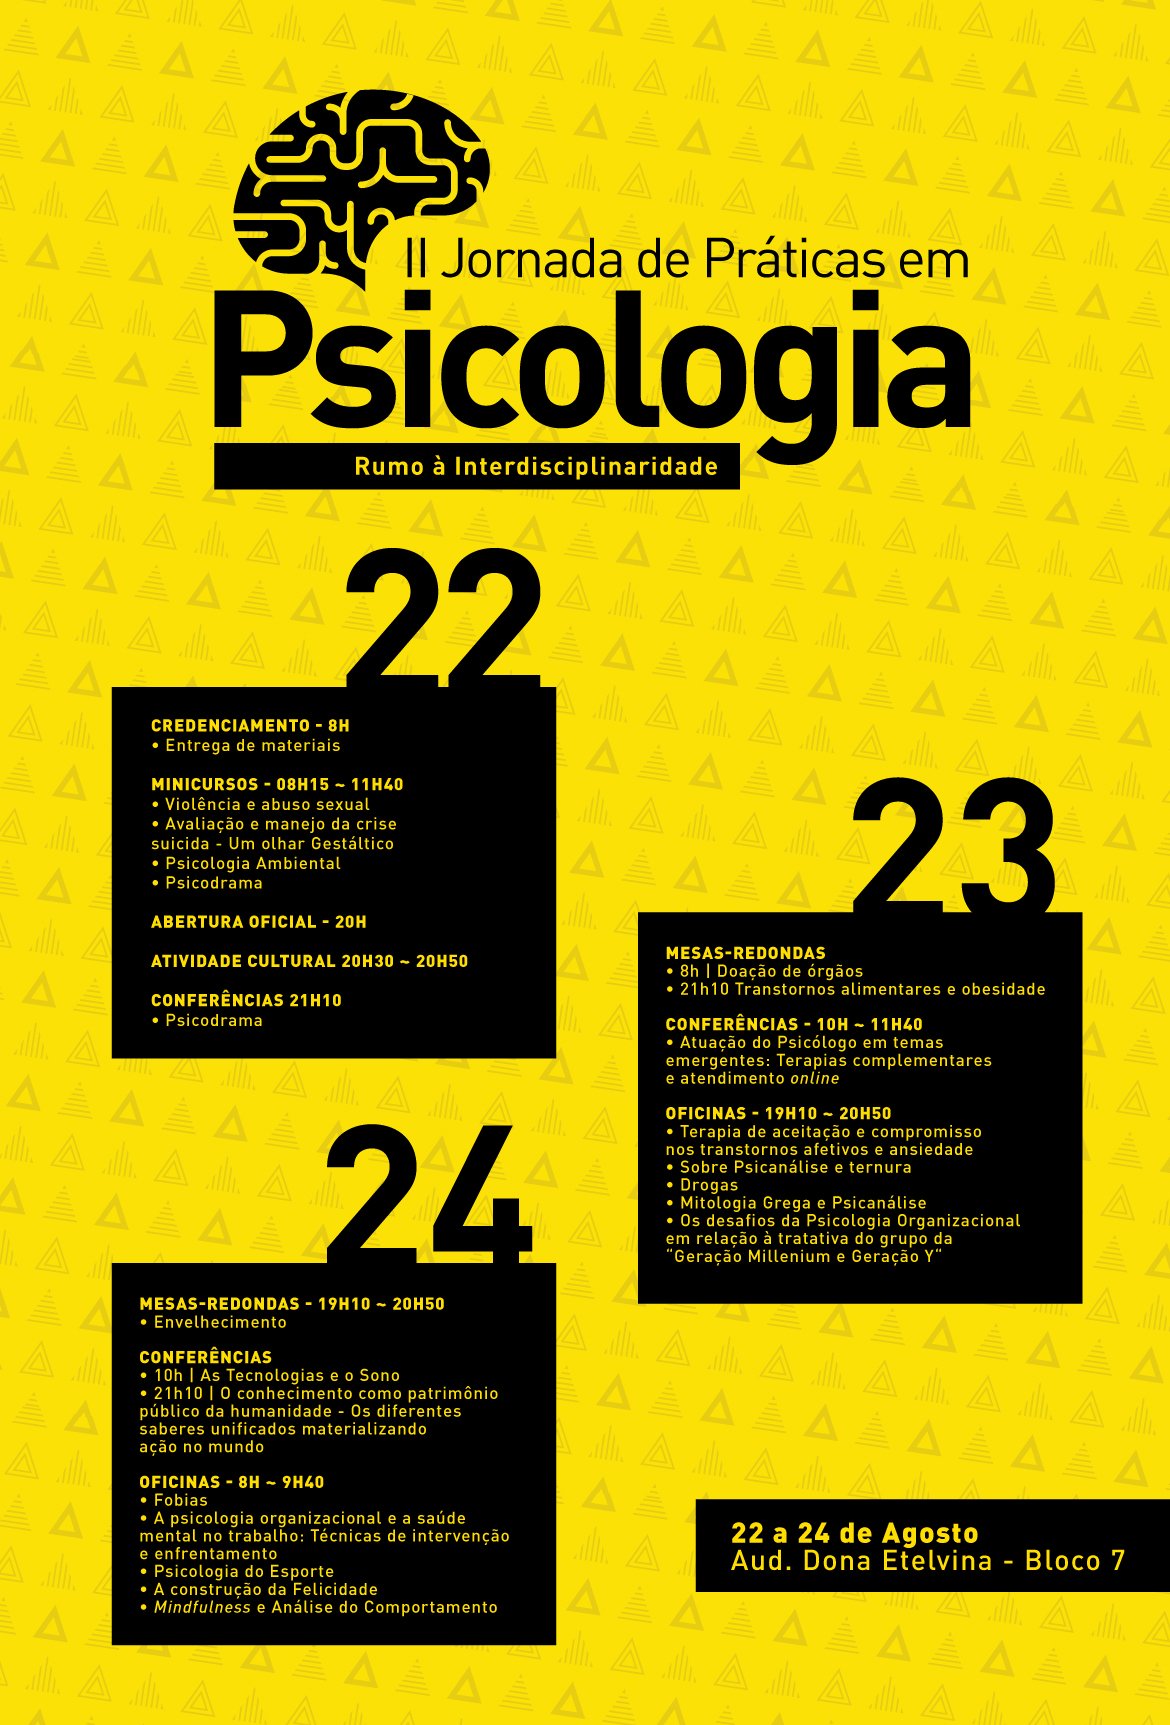 II-Jornada-de-Praticas-em-Psicologia-2